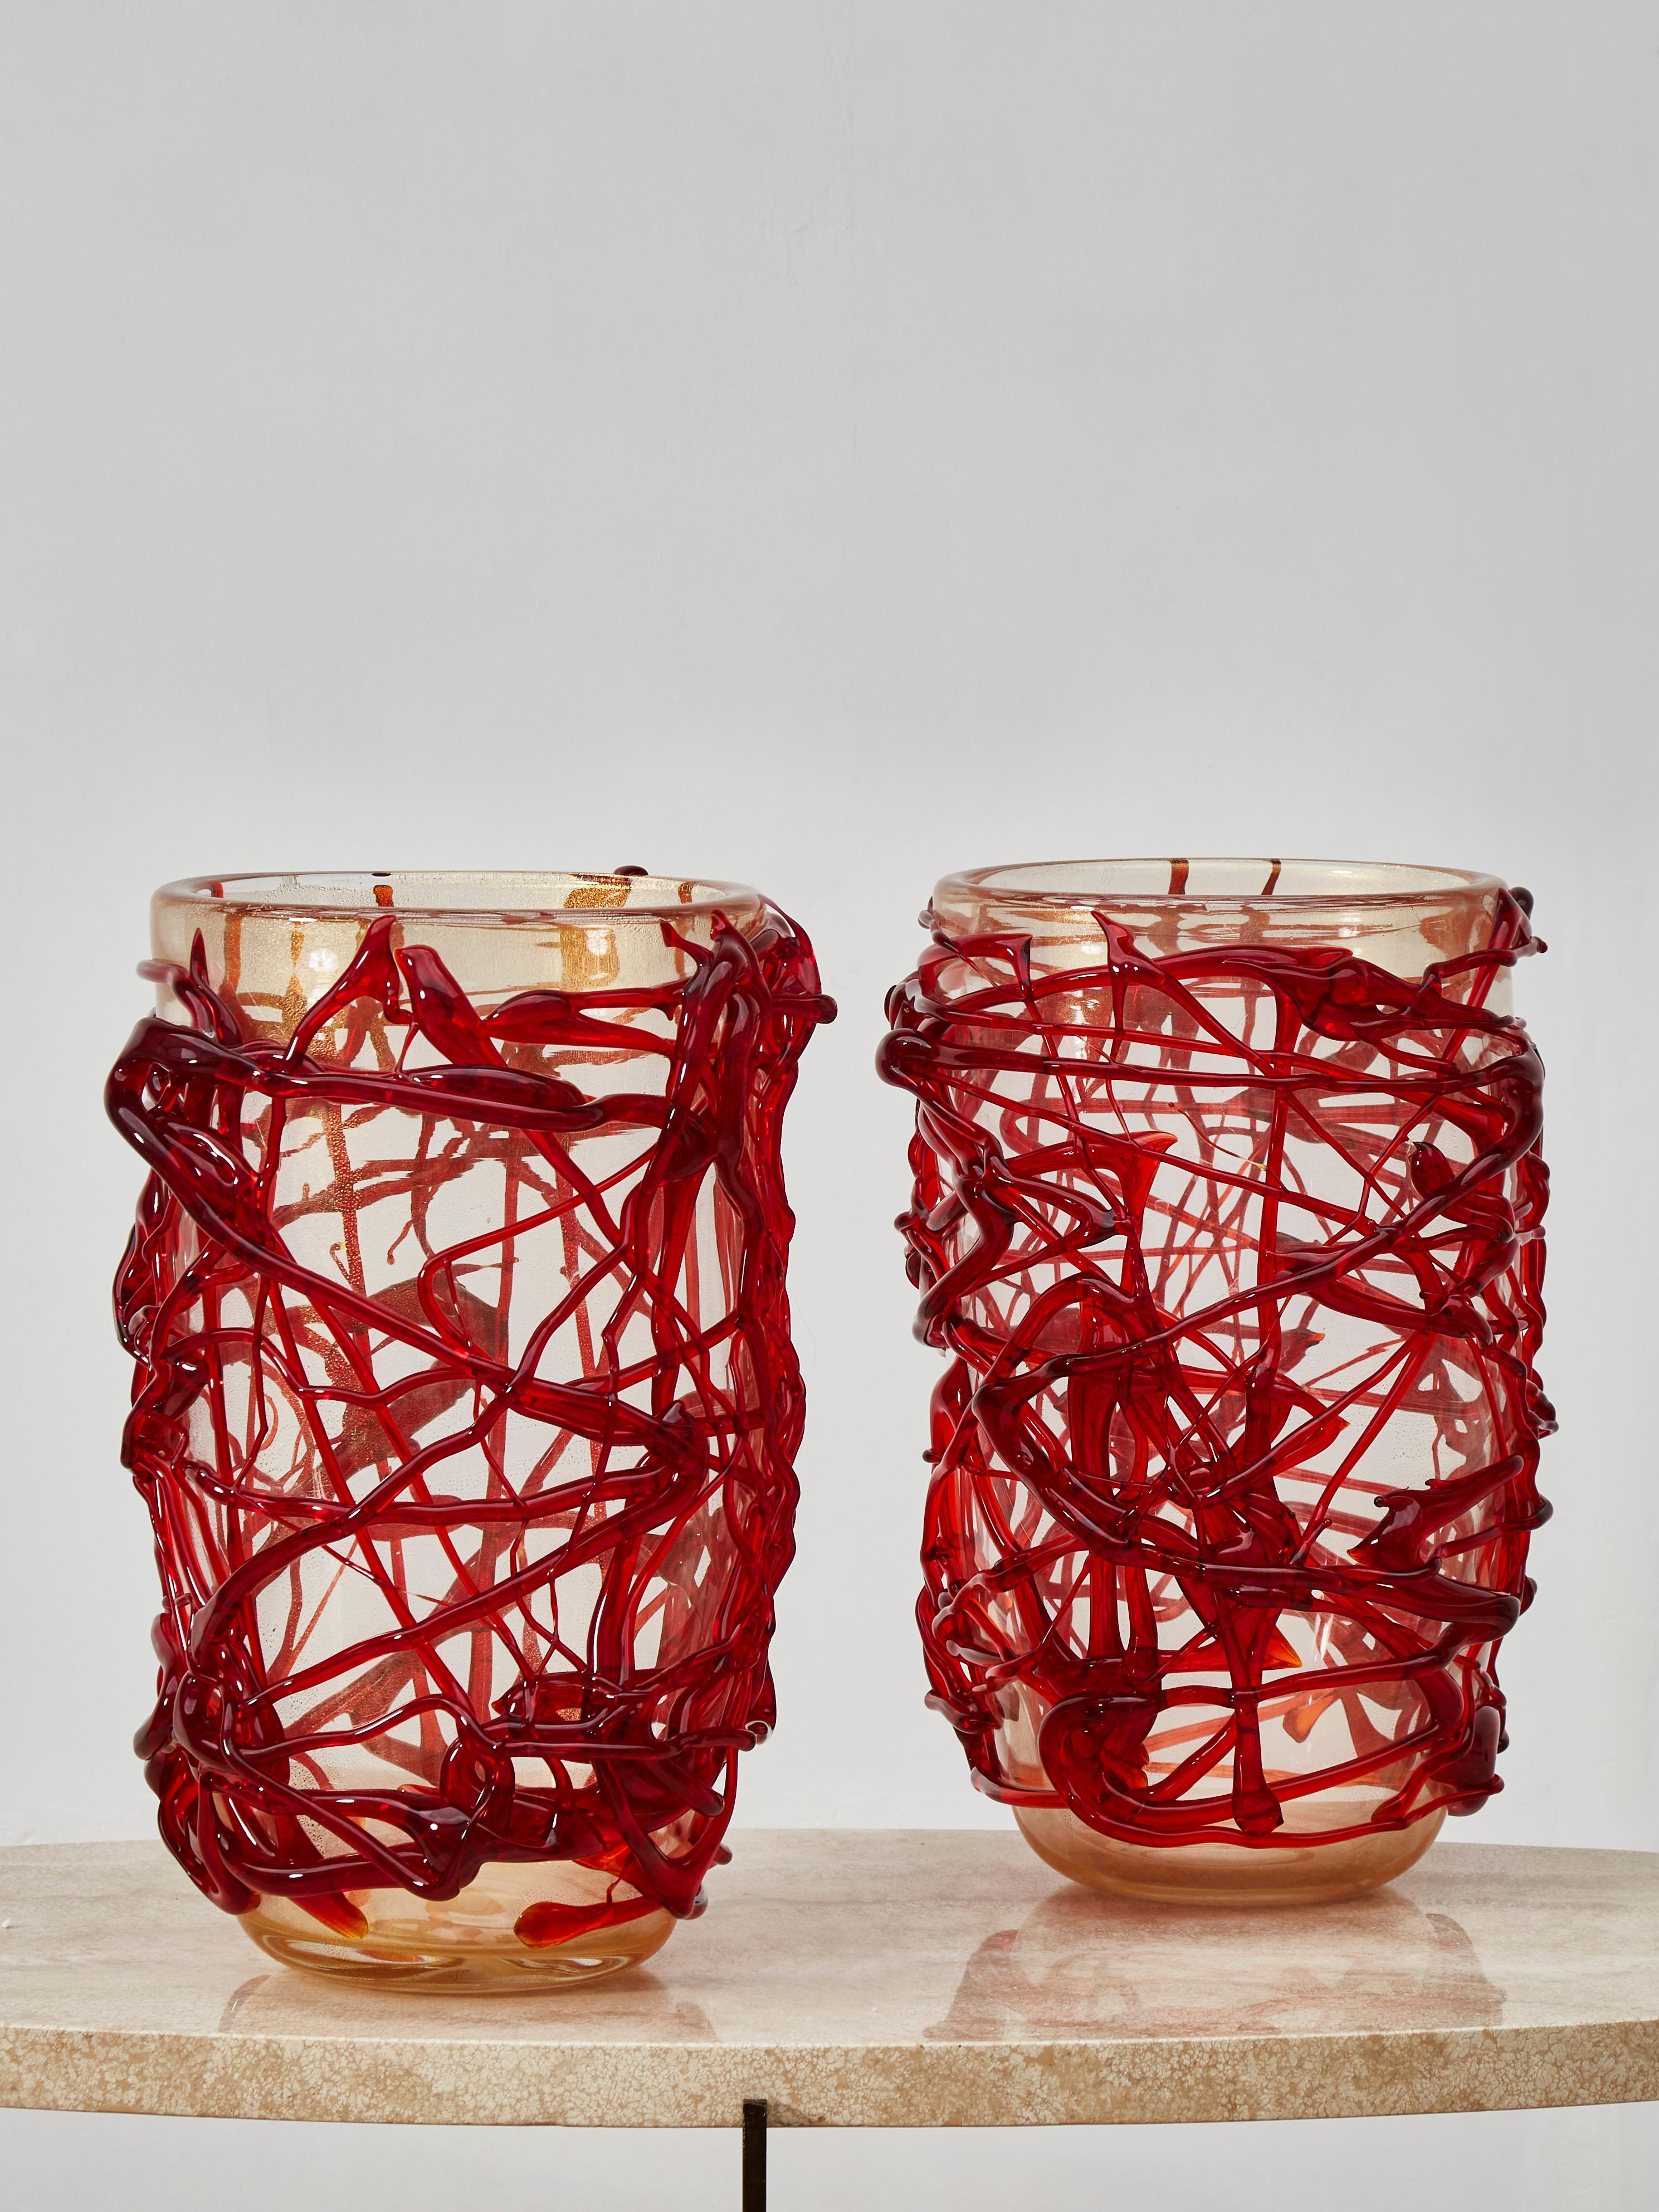 Hervorragendes Paar aus geformtem und rot gefärbtem Muranoglas.
Gestaltung durch Studio Glustin.
Italien, 2021.